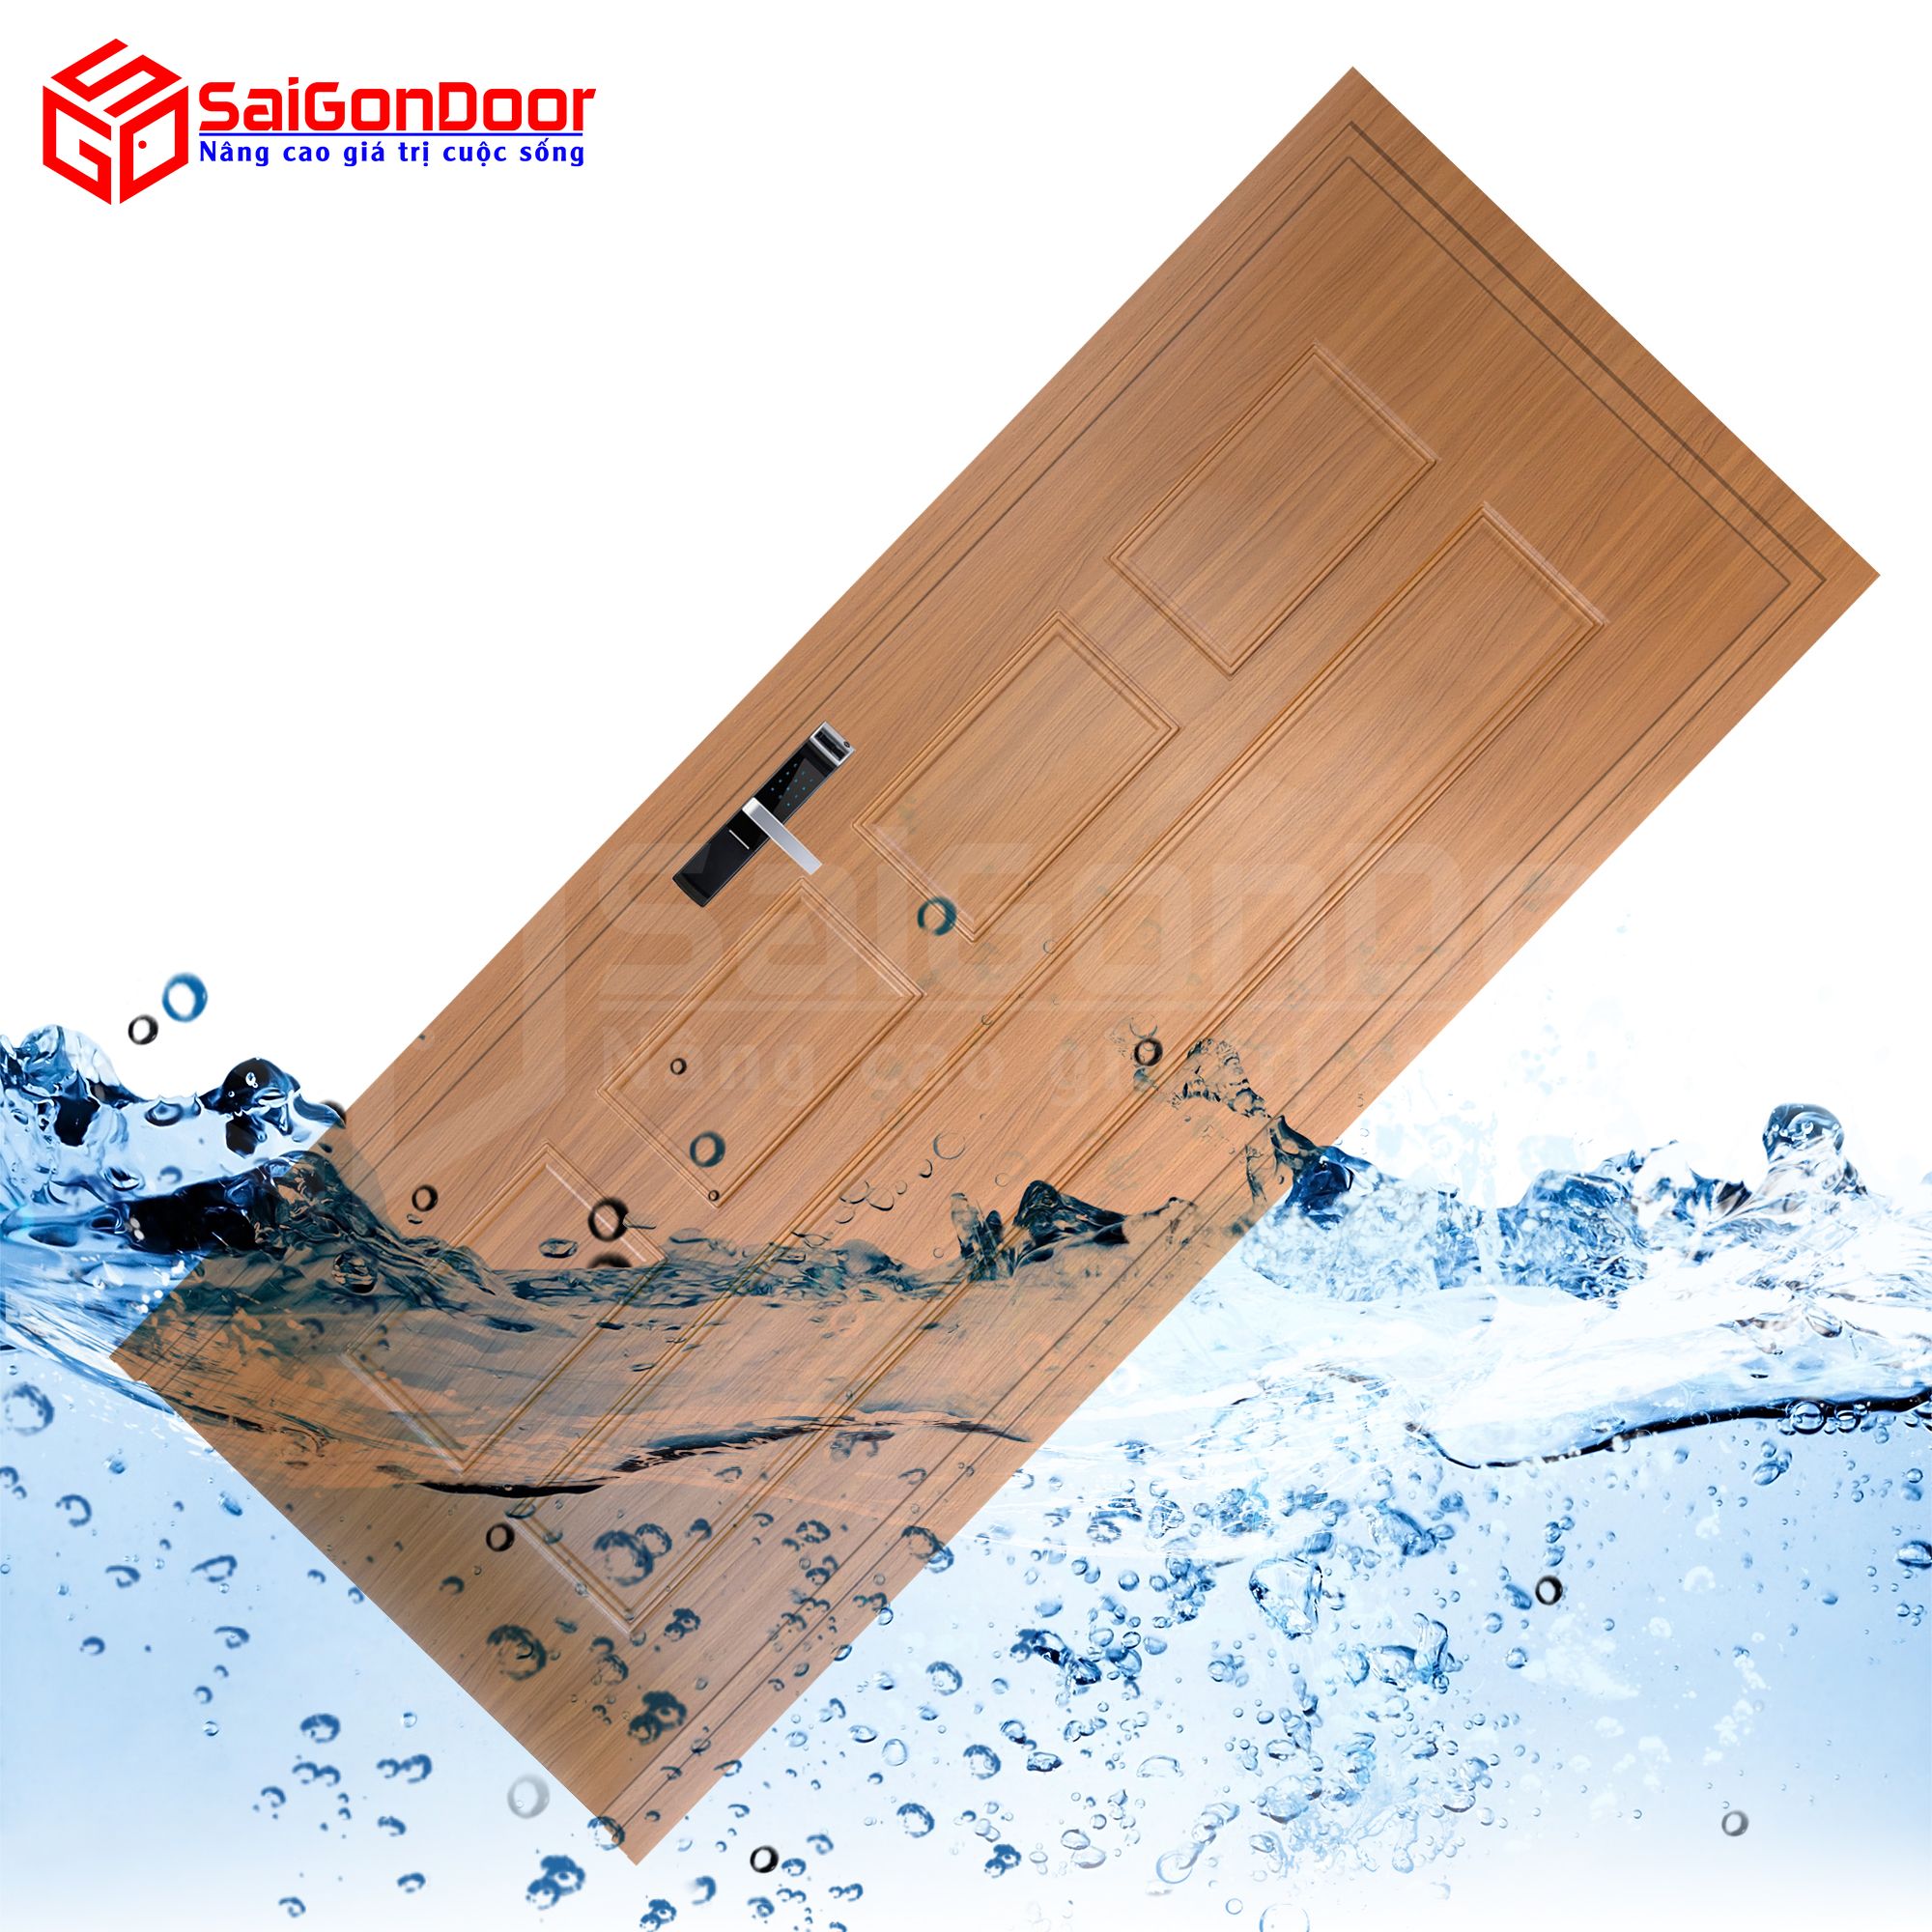 SaiGonDoor cung cấp các mẫu cửa nhựa gỗ giá rẻ và chất lượng